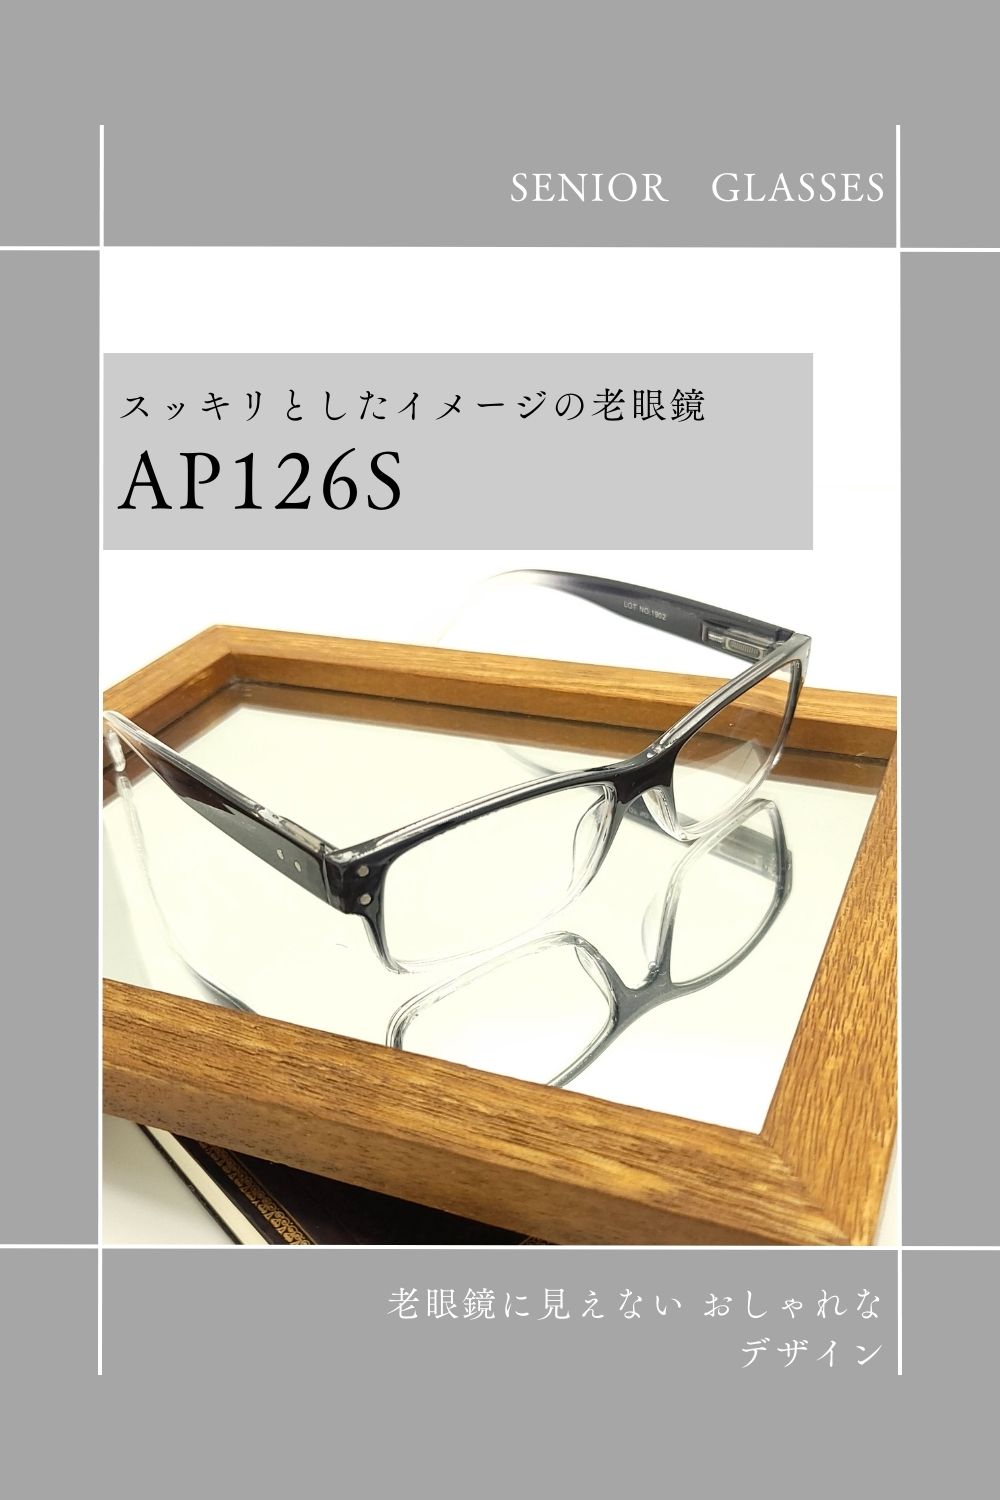 AP126S | AILEオリジナルブランド シニアグラスラインナップ | 有限会社エール